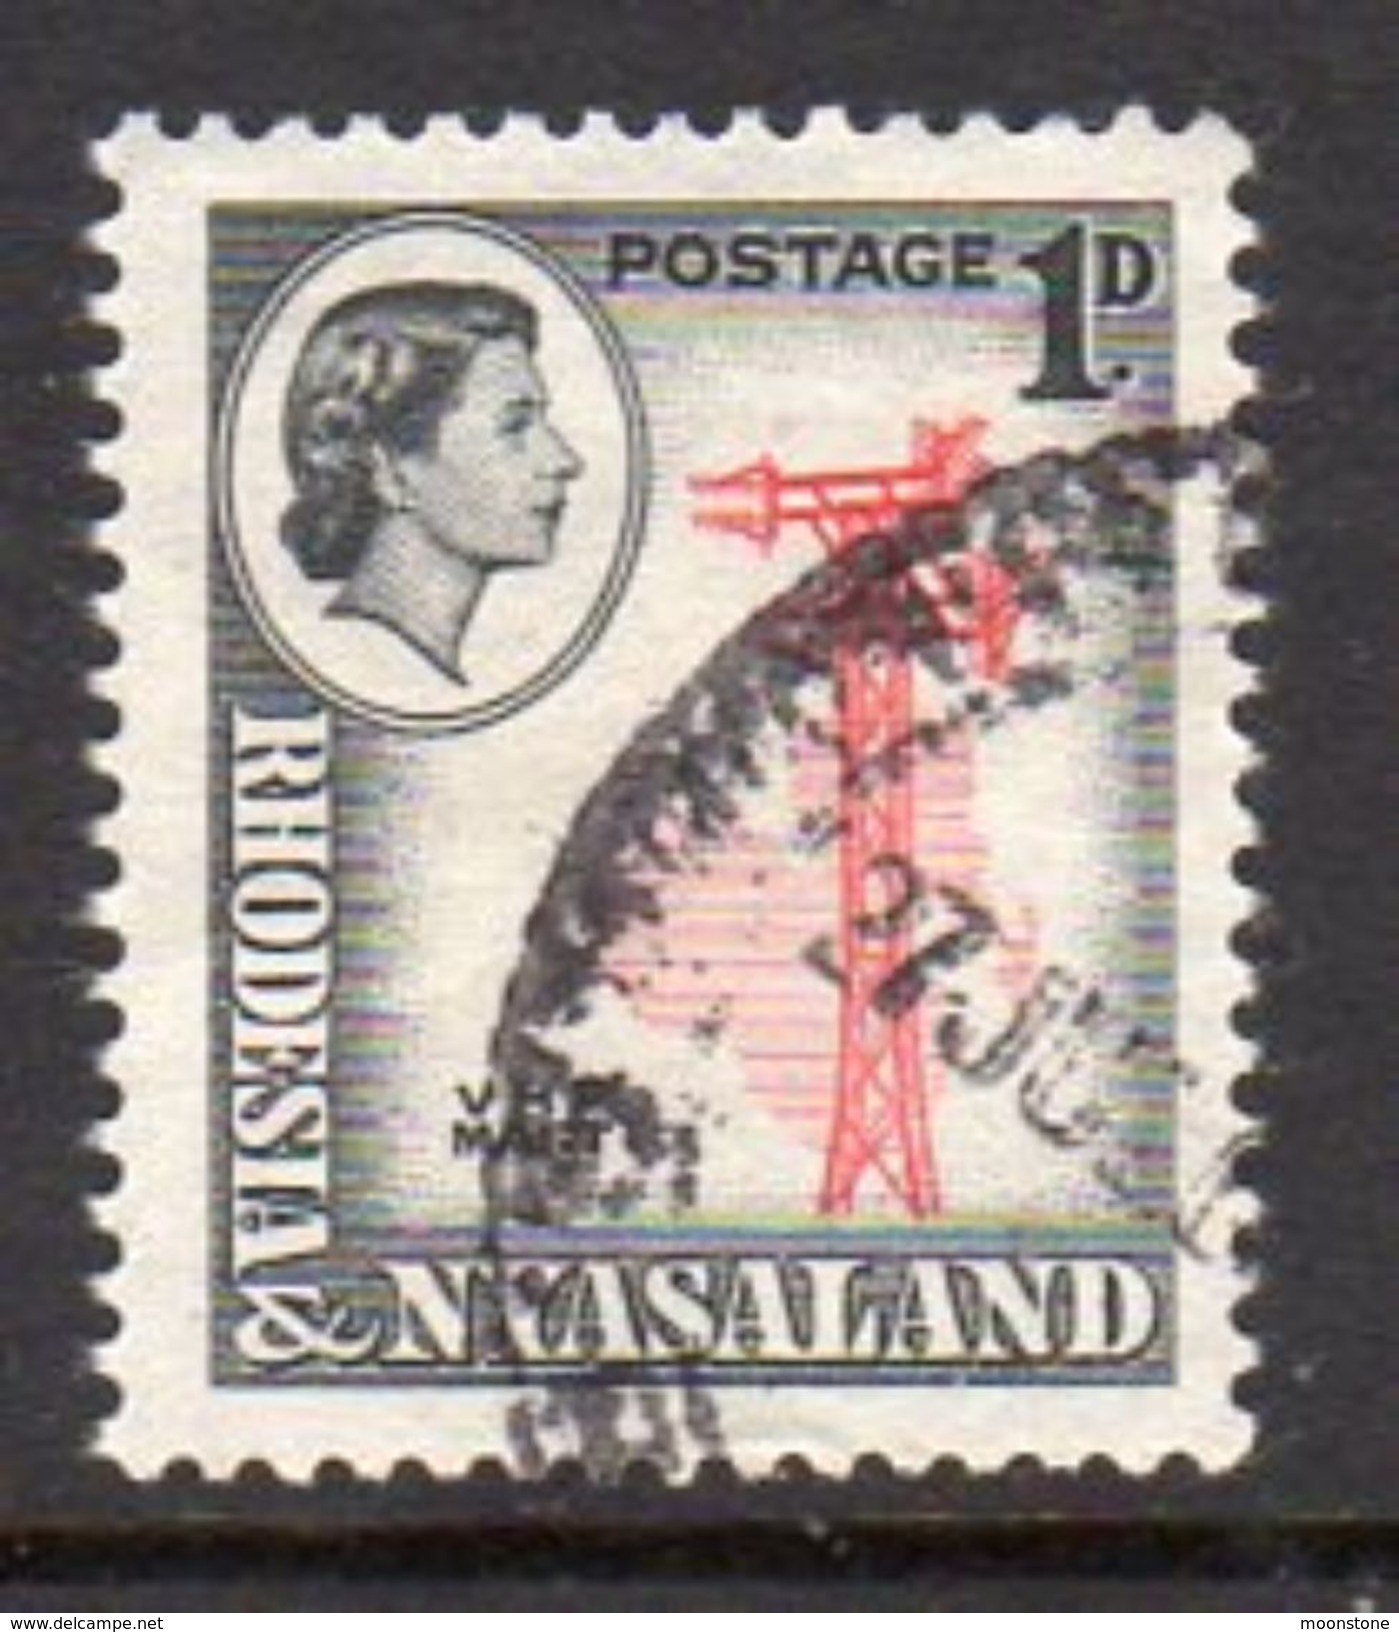 Rhodesia & Nyasaland 1959 1d VHF Radio Mast Definitive, Used, SG 19 (BA) - Rhodesië & Nyasaland (1954-1963)